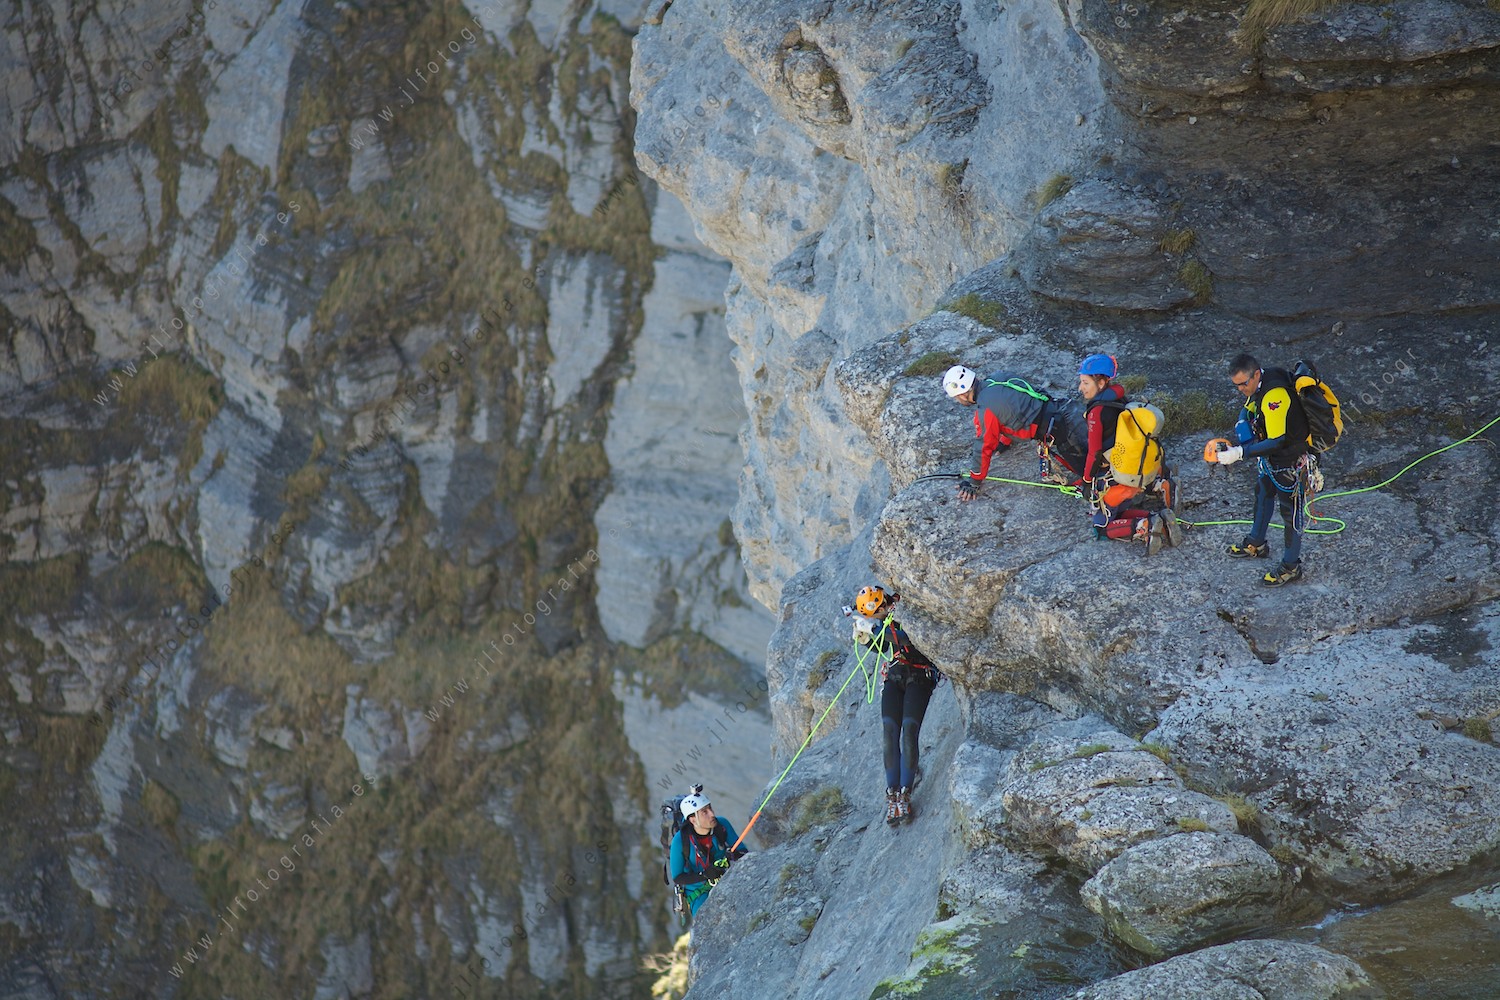 Detalle de los montañeros que descendían por las paredes del salto del Nervión haciendo rapel